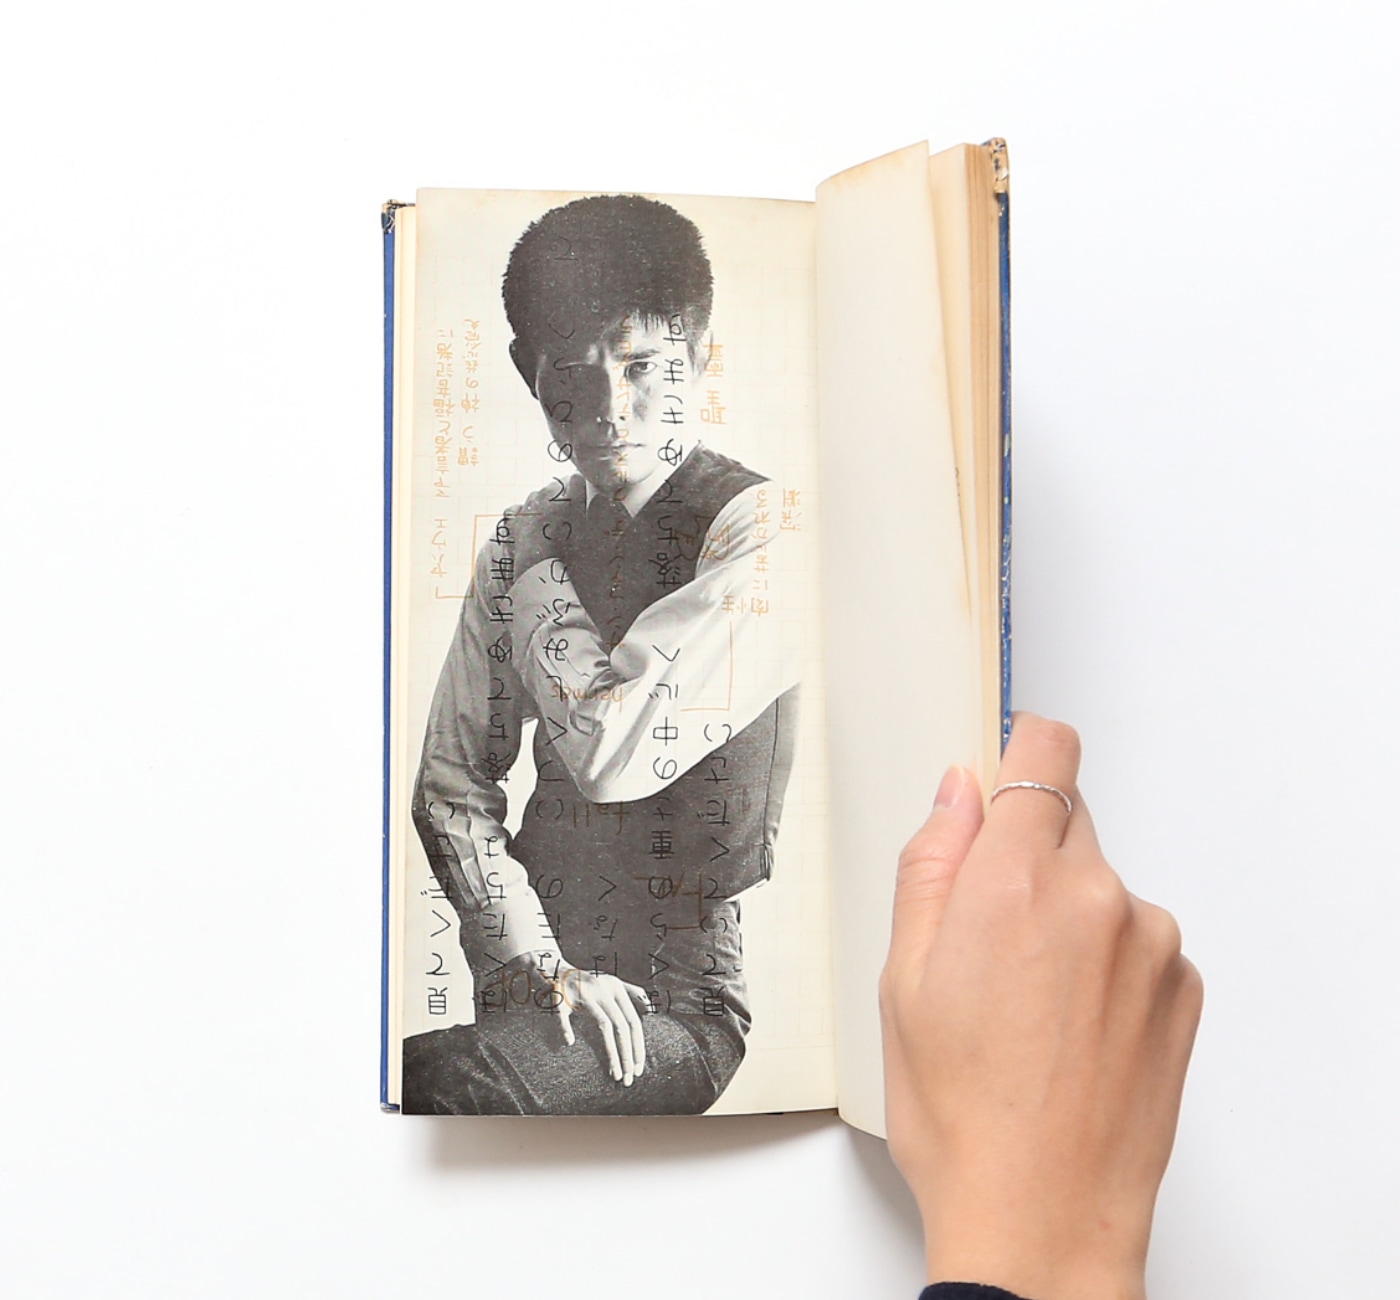 高橋睦郎詩集「眠りと犯しと落下と」1965年 海外輸入 - core-group.com